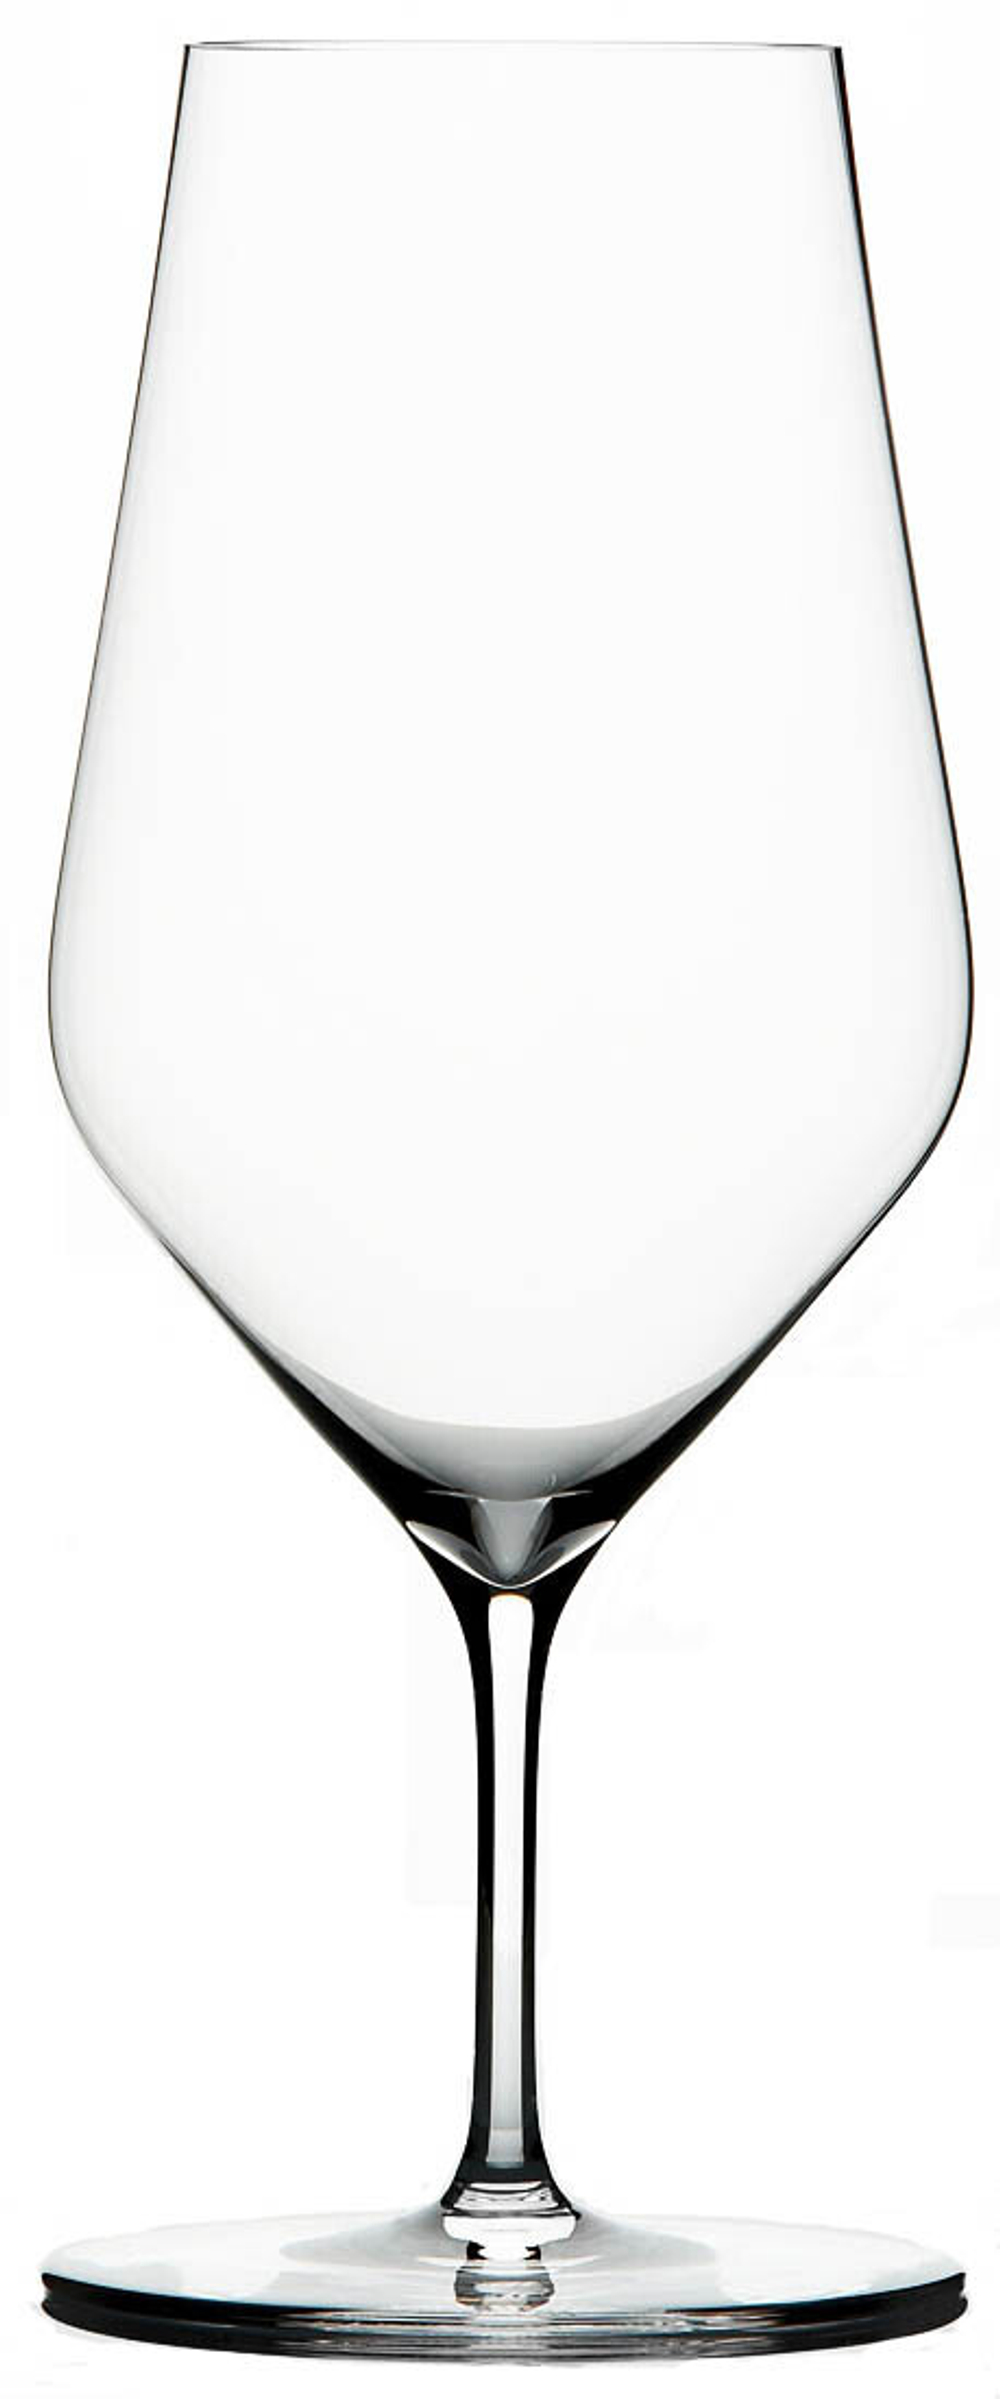 Бокалы Zalto Water Set of 2 Glasses, 400 мл